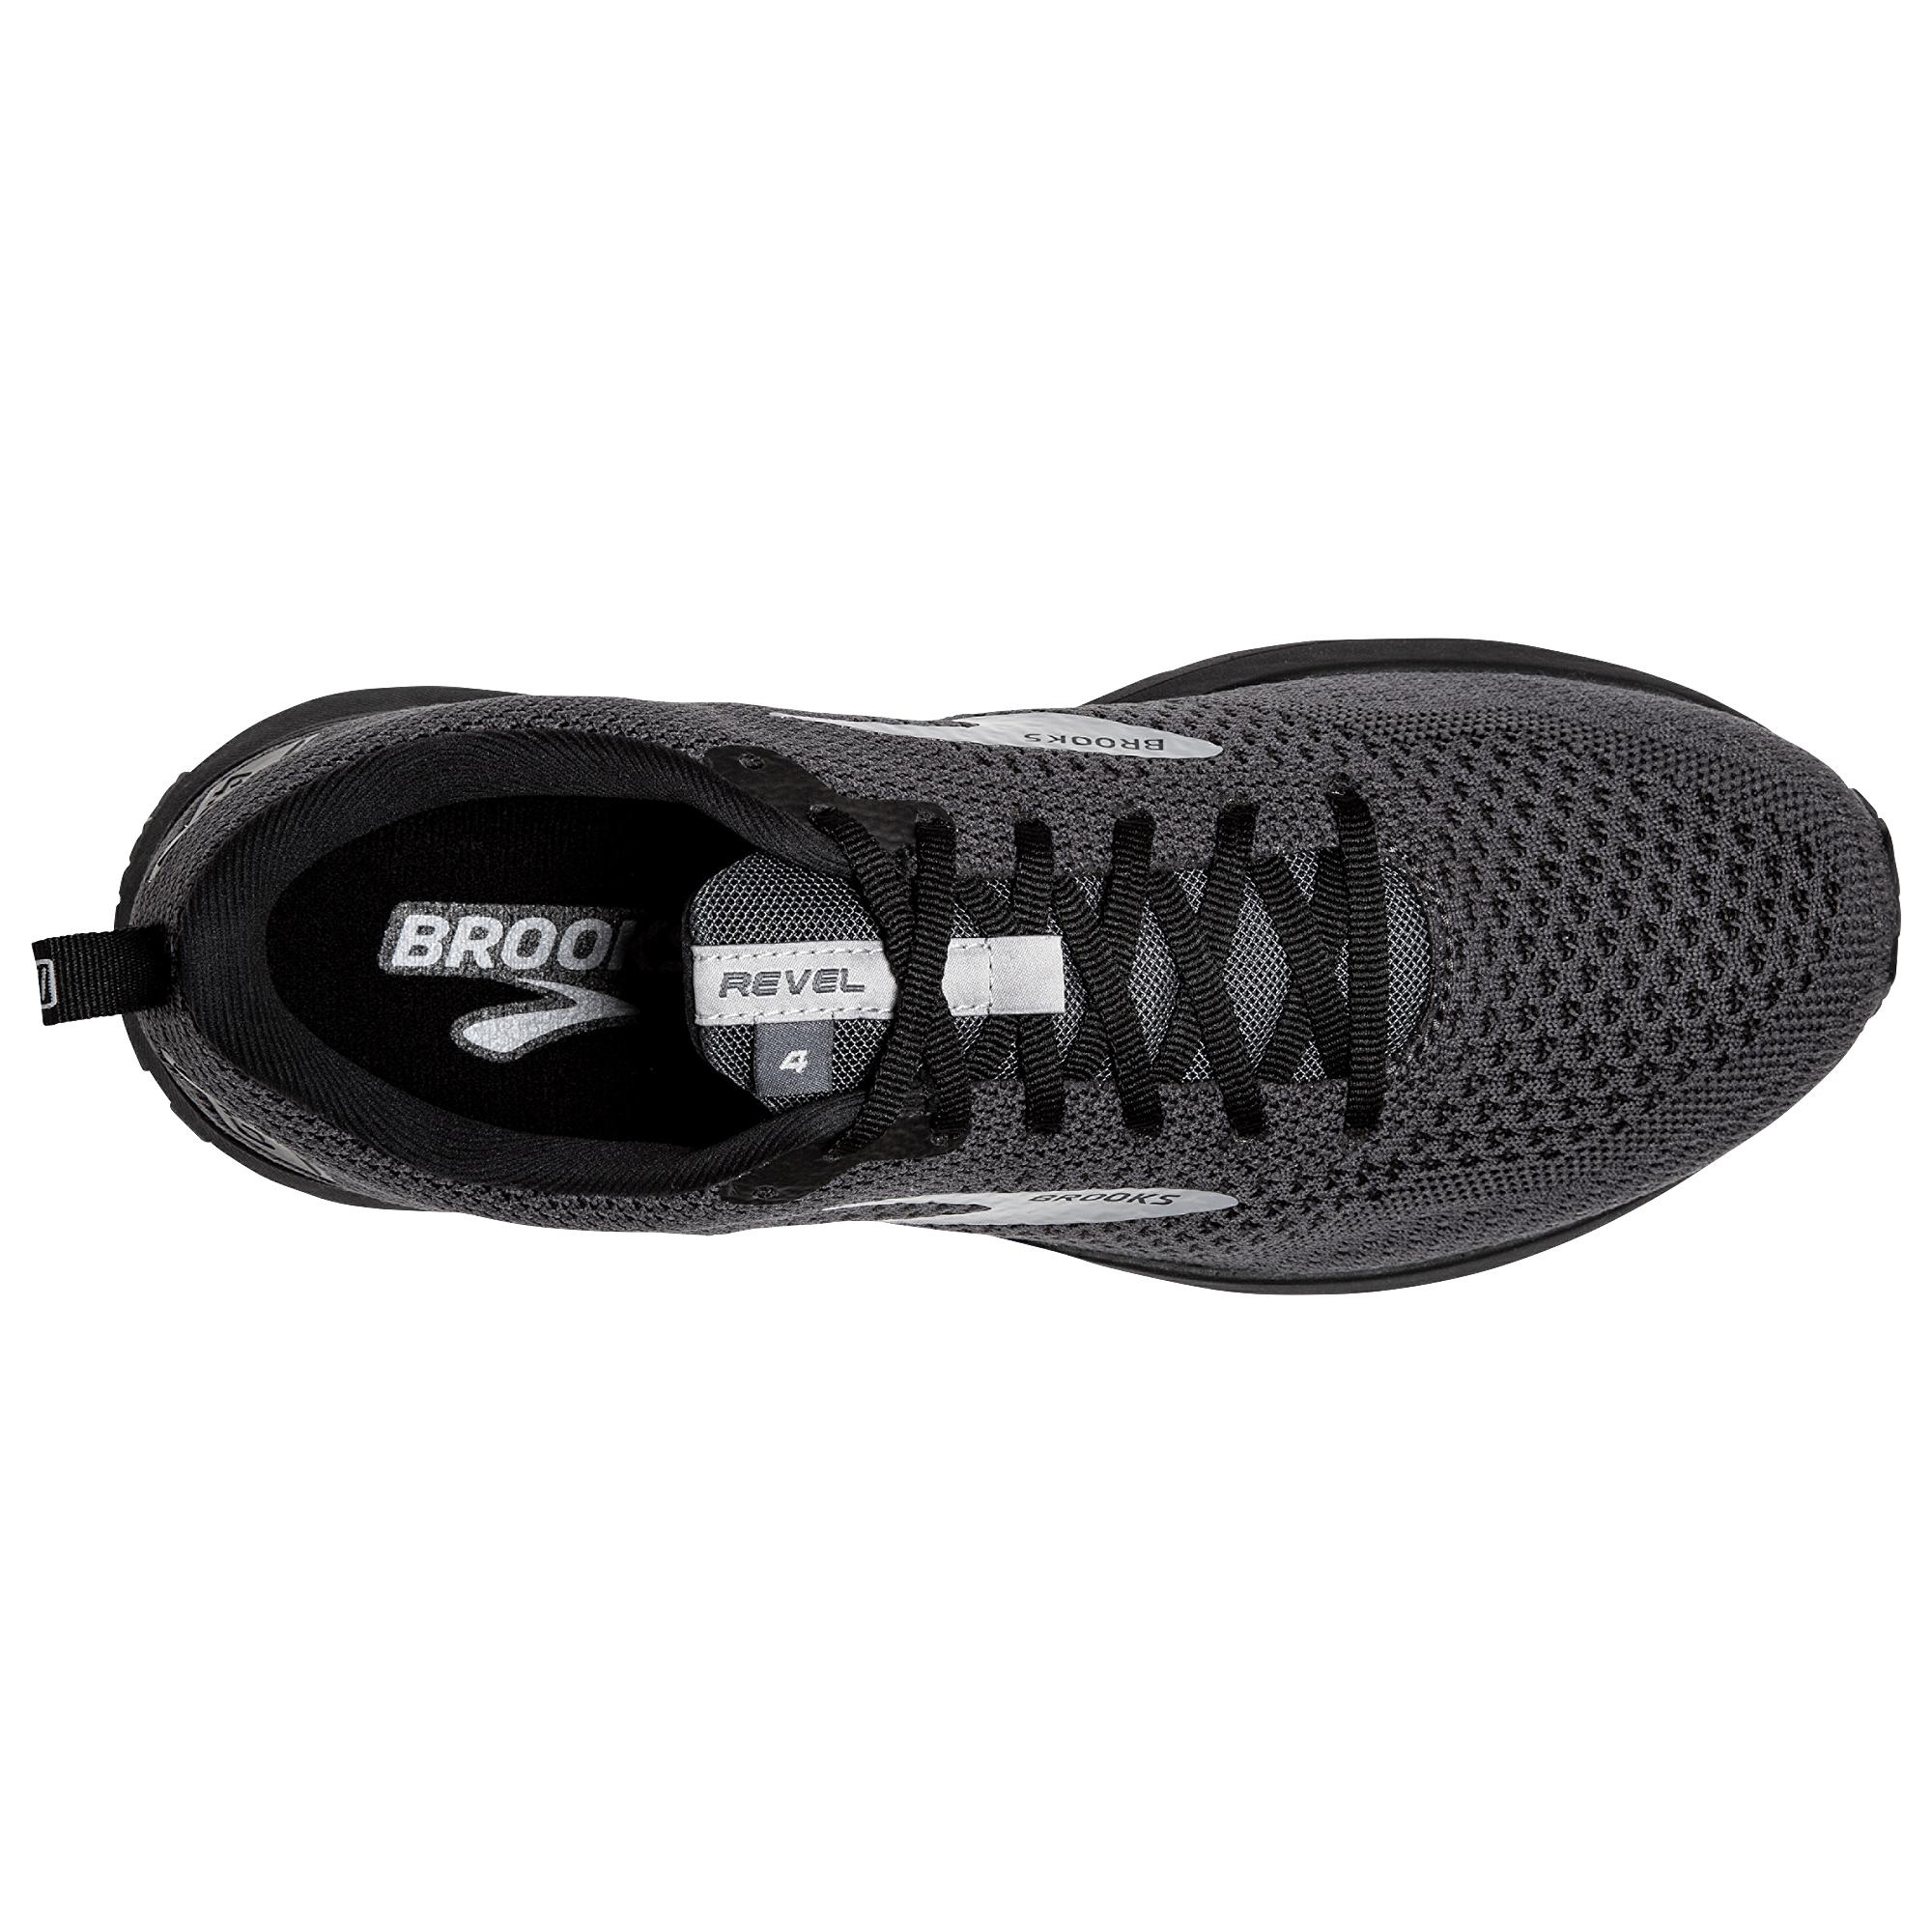 Brooks Rubber Revel 4 - Running Shoes in Black for Men - Lyst